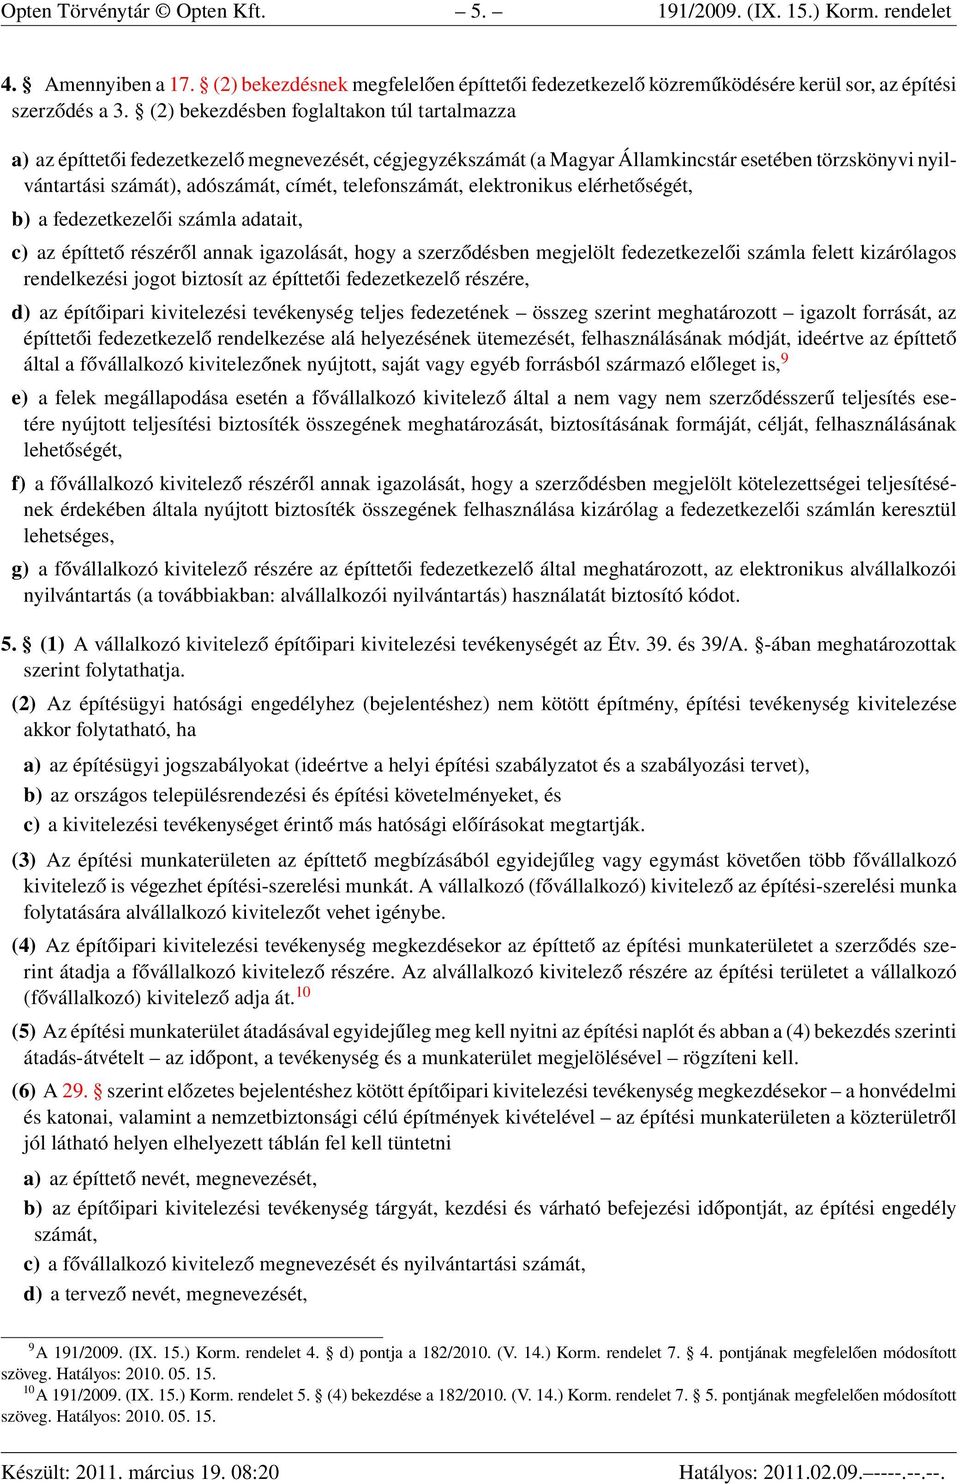 191/2009. (IX. 15.) Korm. rendelet az építőipari kivitelezési  tevékenységről - PDF Ingyenes letöltés